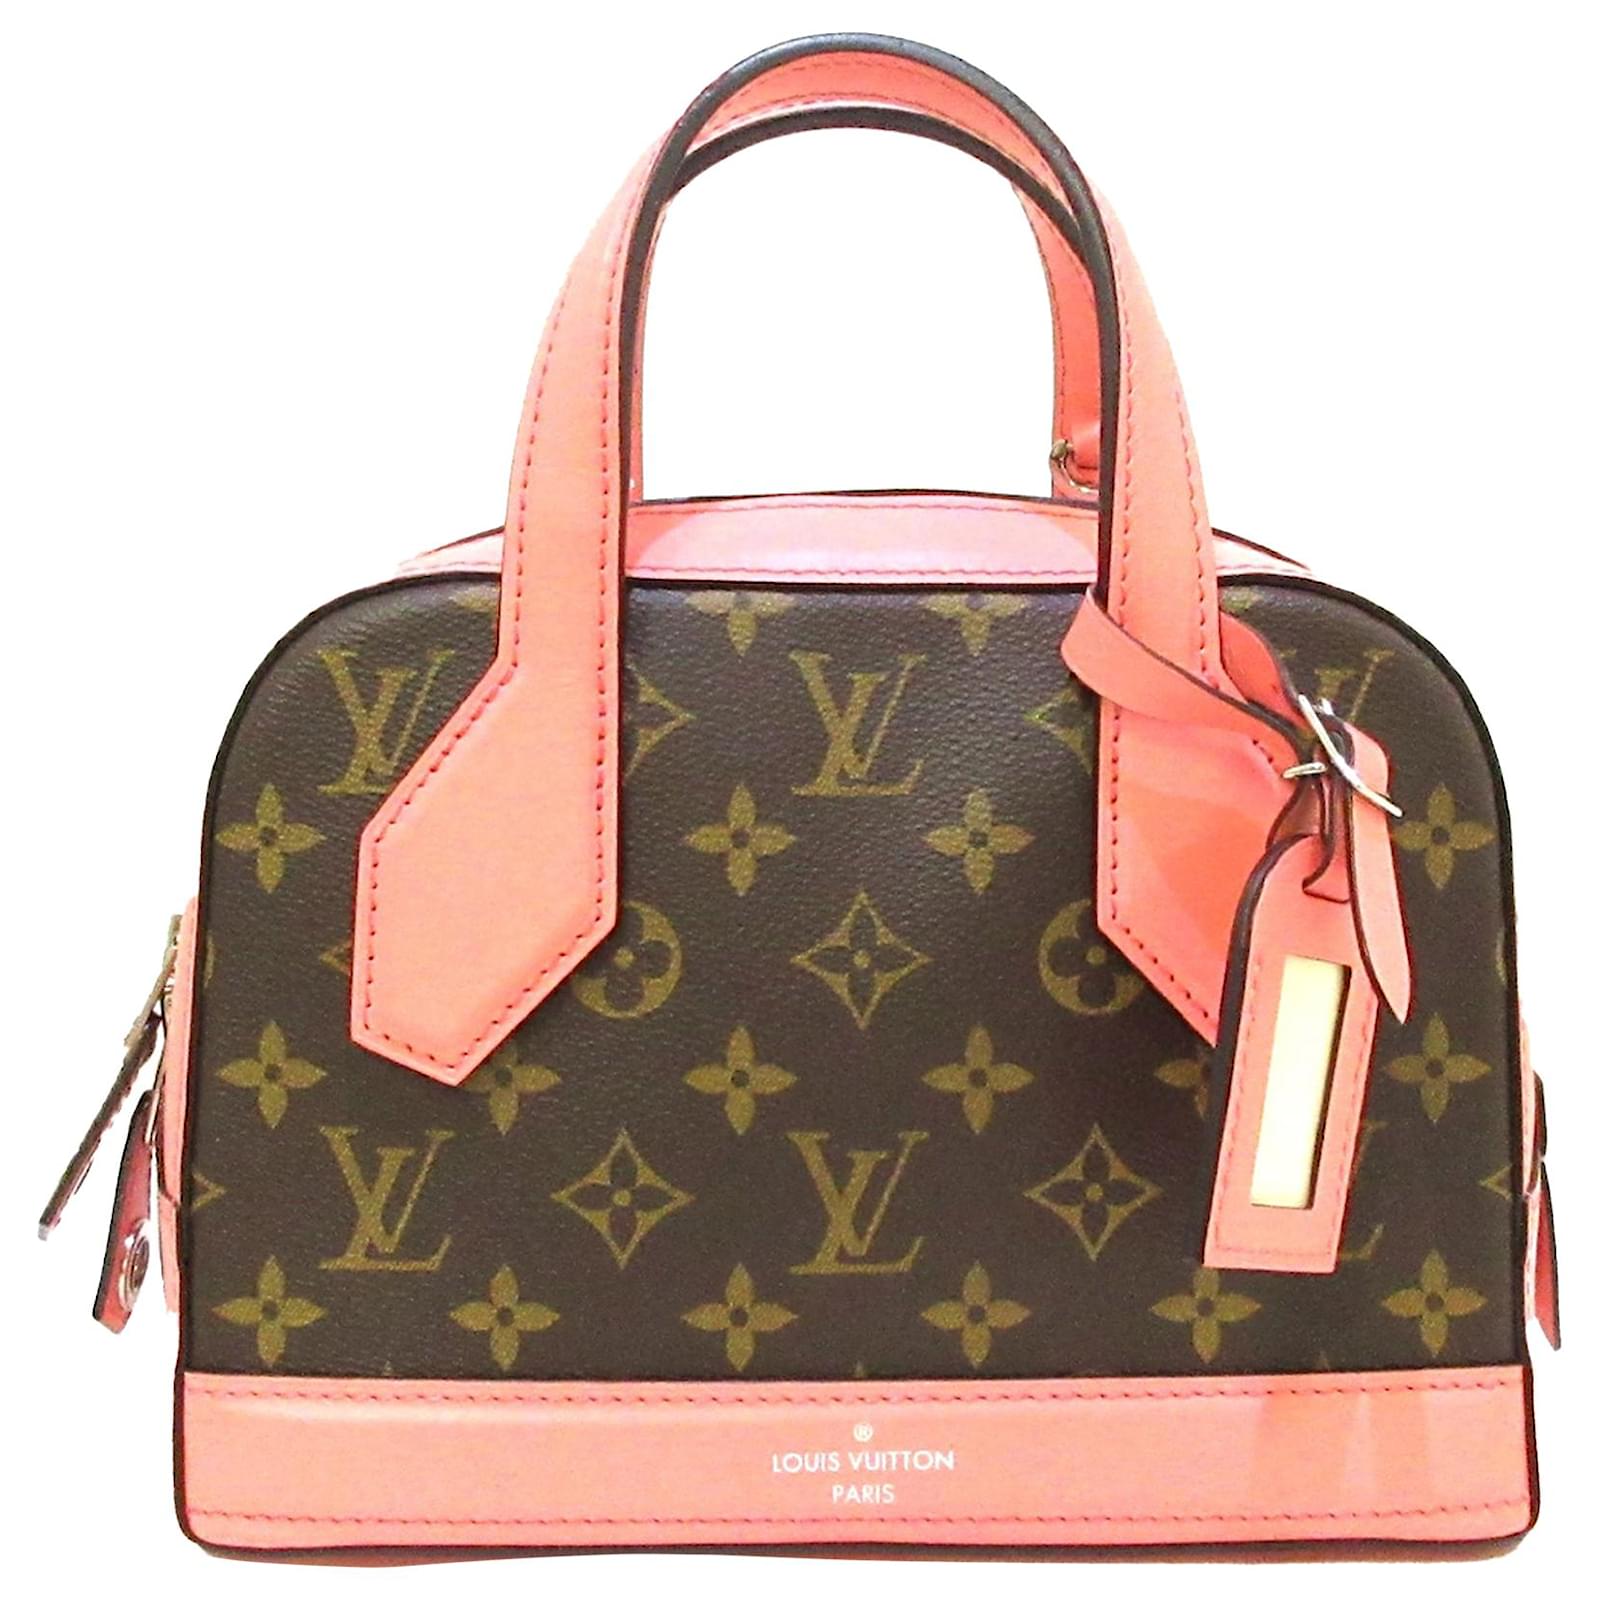 LOUIS VUITTON, Dora, handbag/shoulder bag in monogram canvas